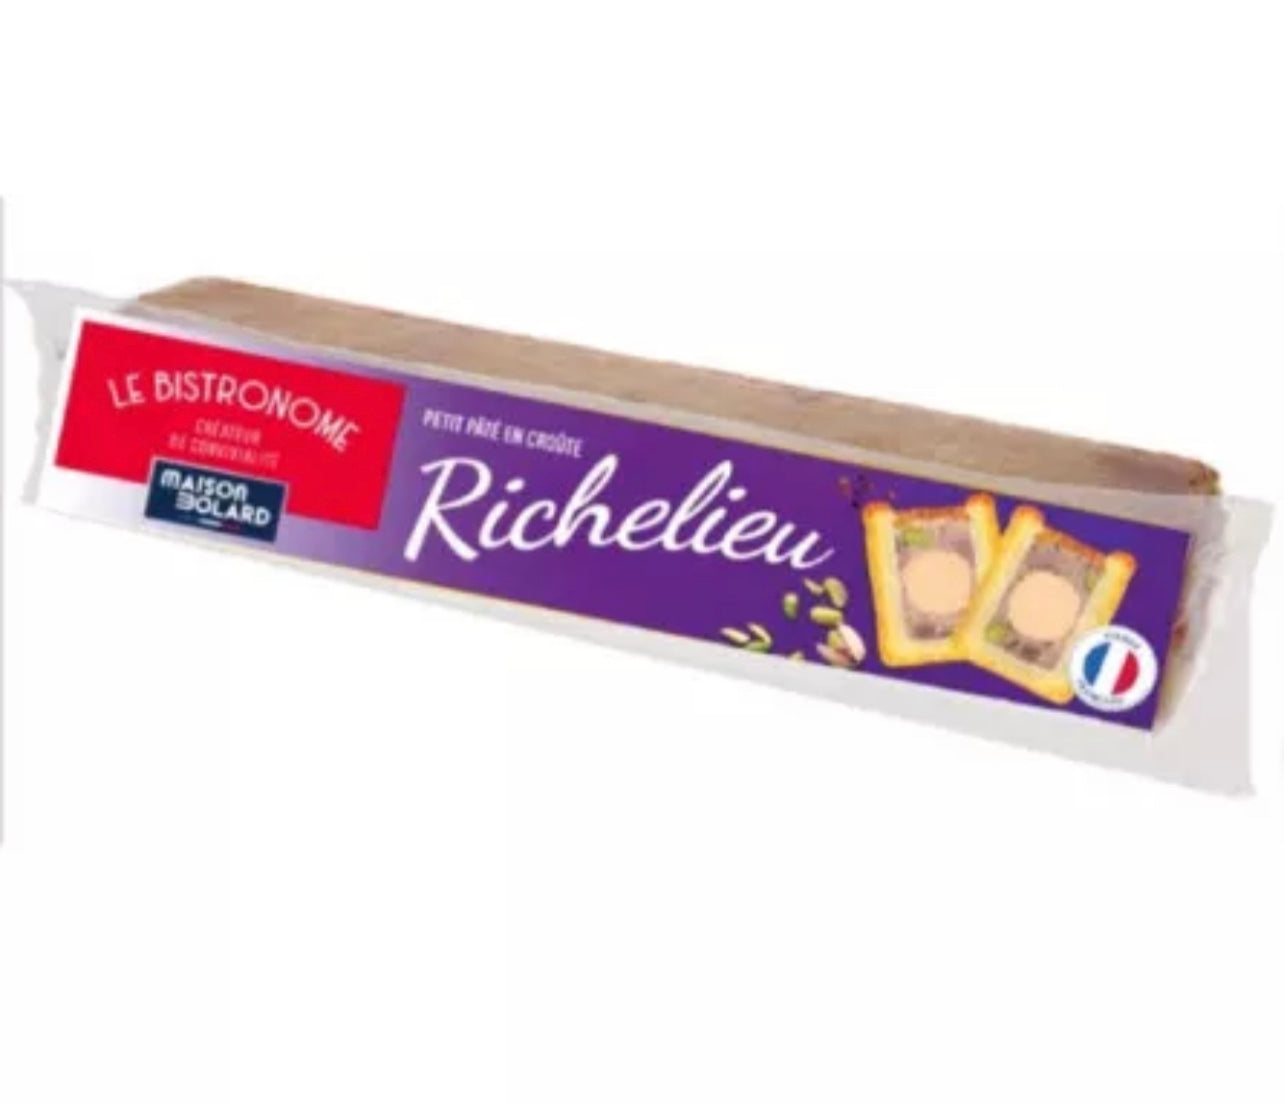 Mini paté en croute “Le Bistronome” Richelieu con pato - 450g